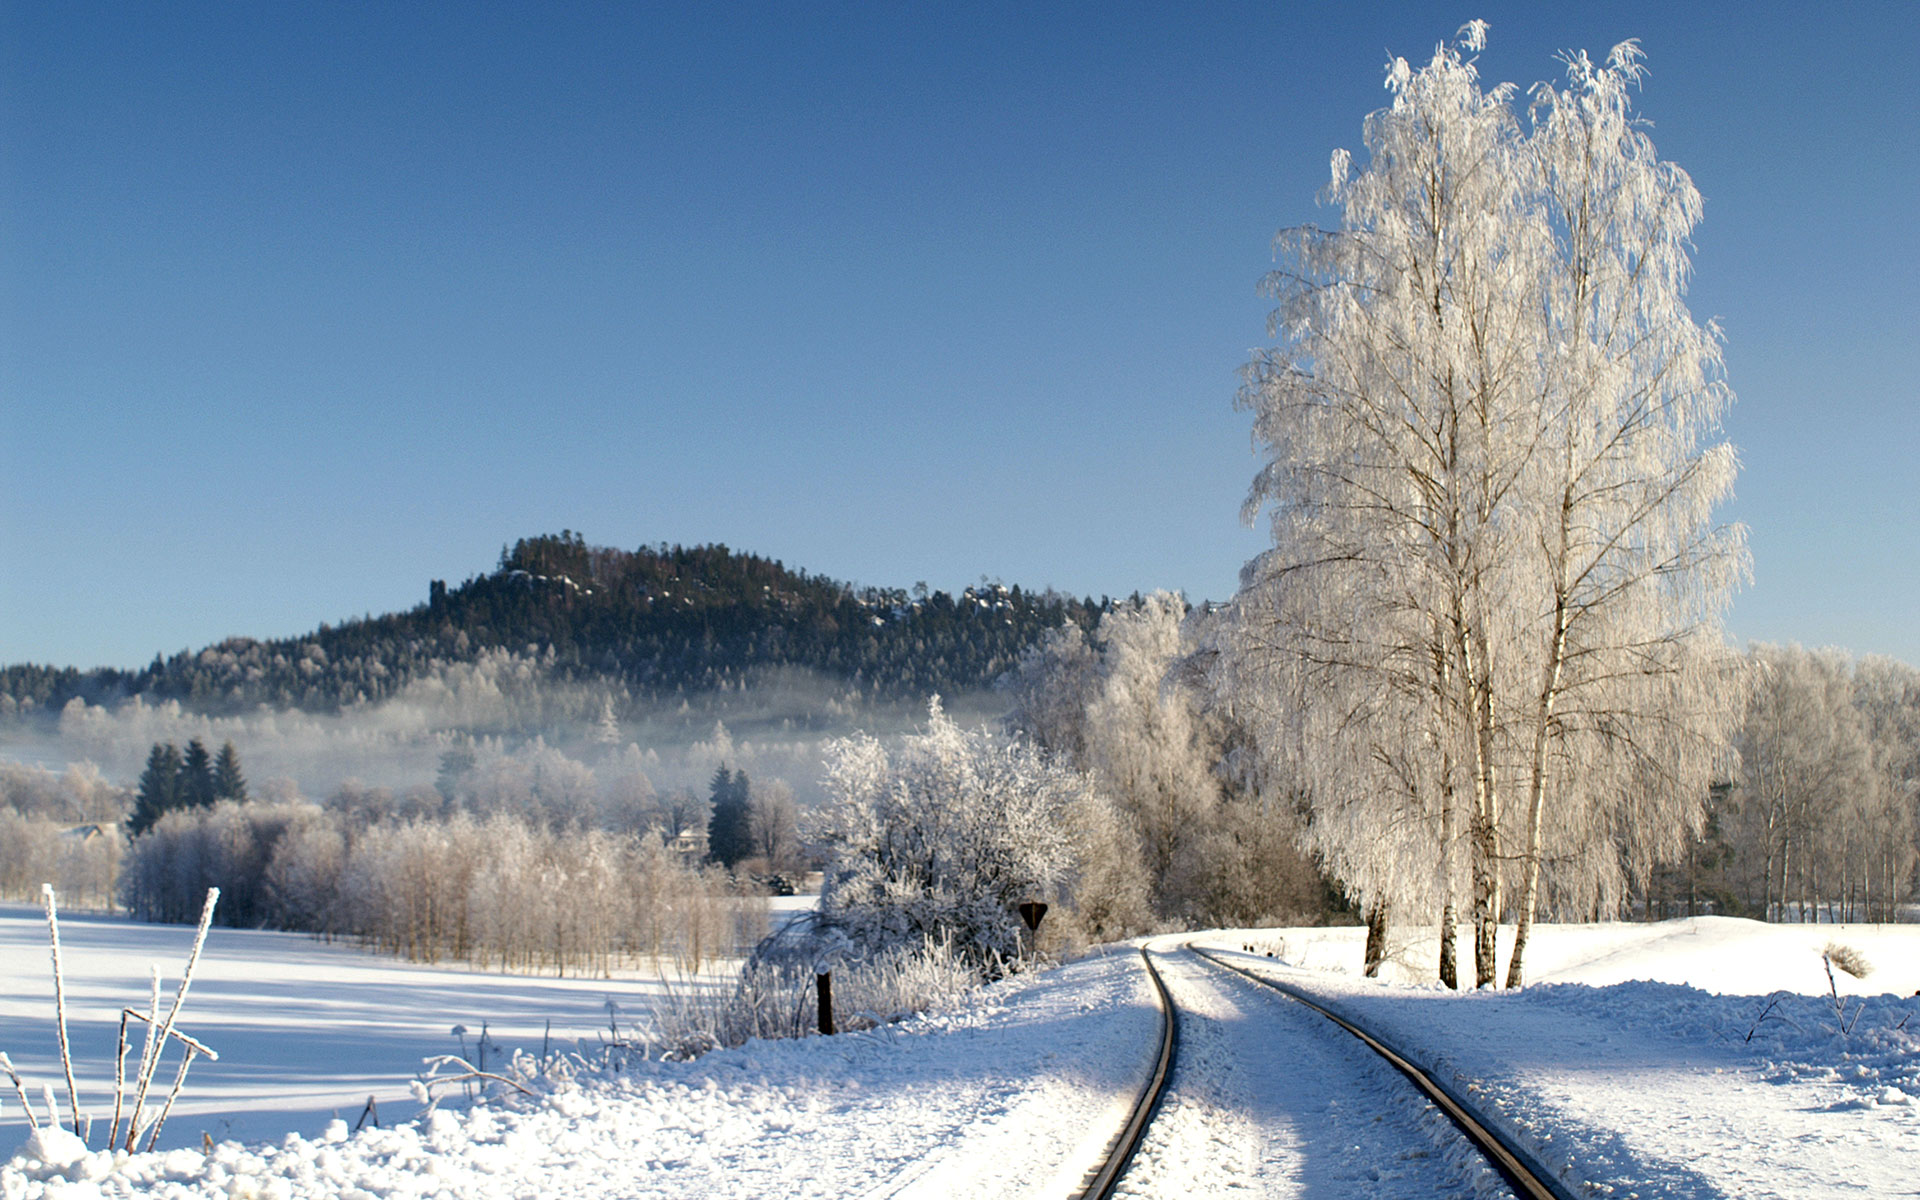 The Czech Republic has an excellent network of rural railways (photo © Tomás Simek / dreamstime.com)